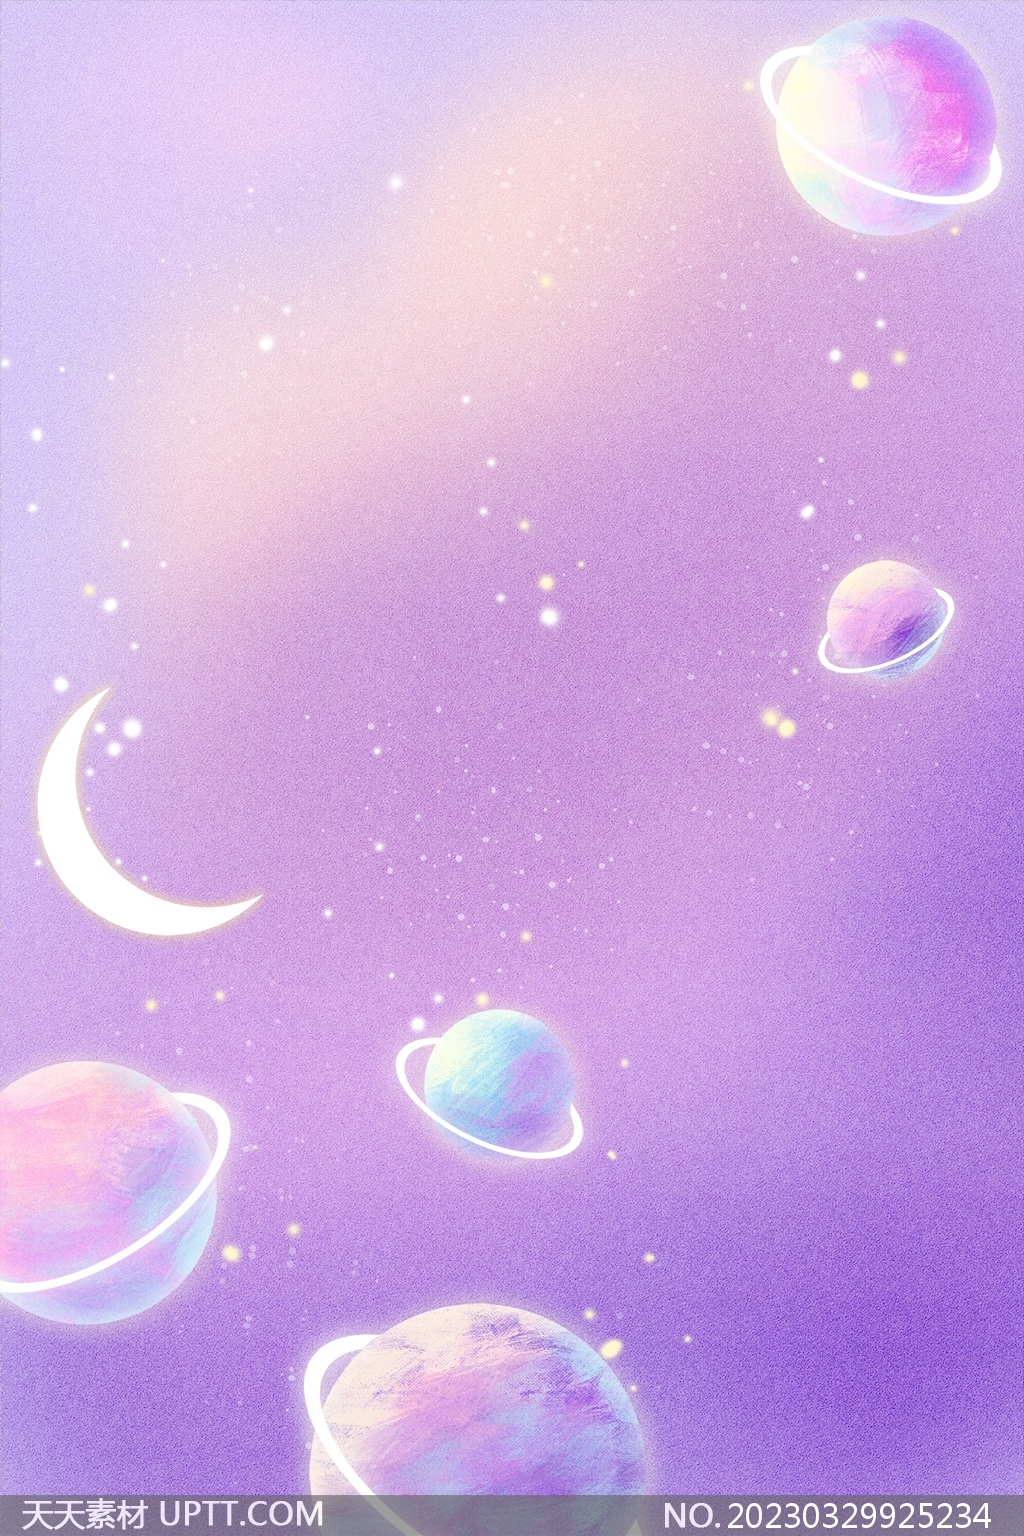 梦幻星球月亮唯美宇宙夜空紫色背景